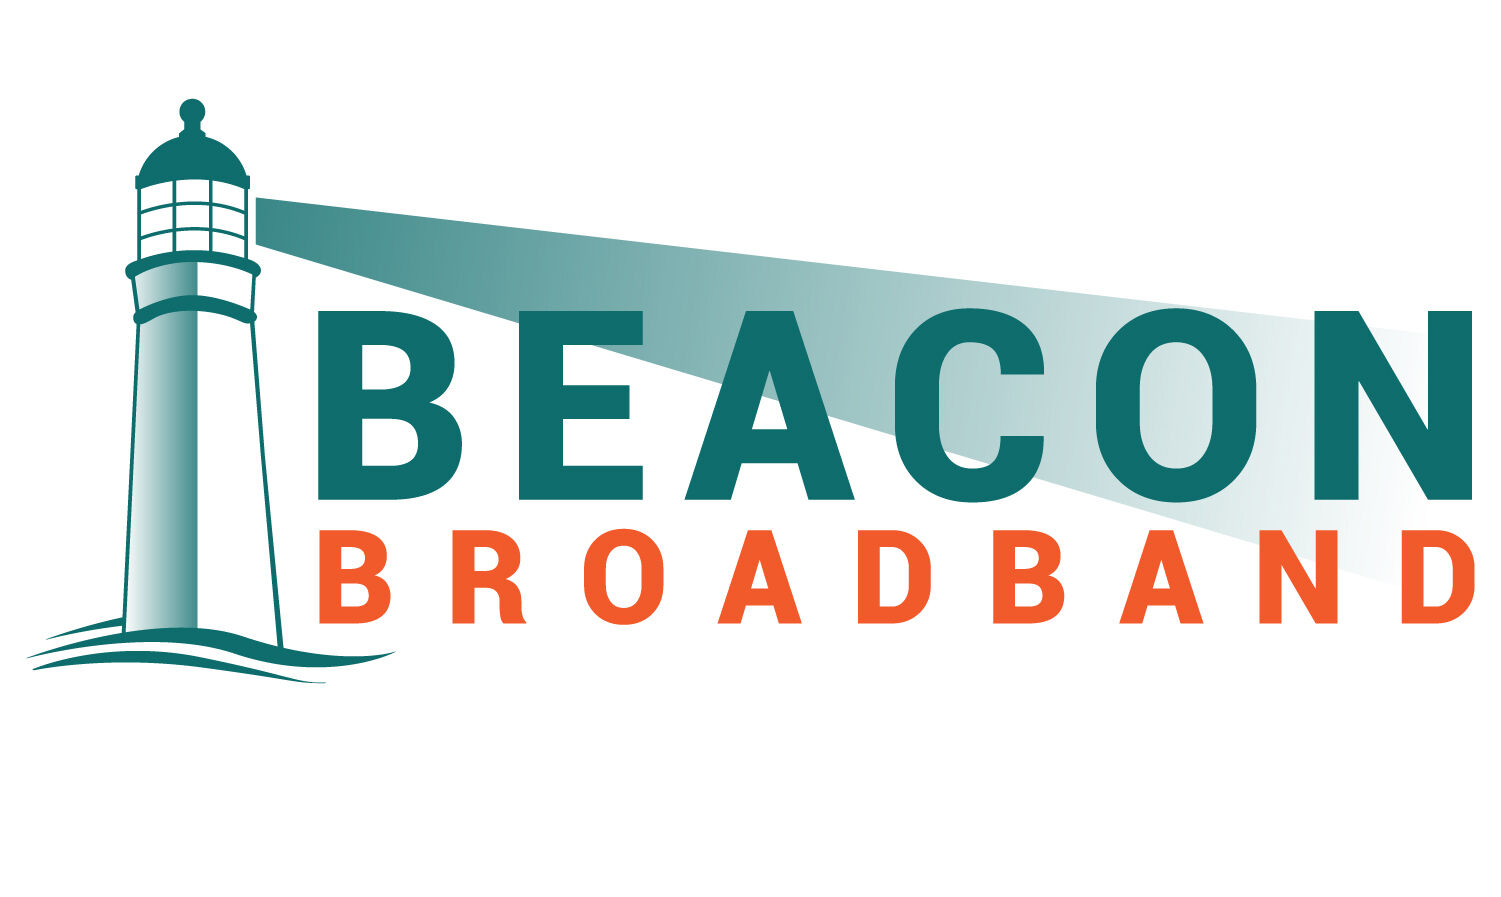 Cleveland Broadband - Gigabit Internet for Your Home!